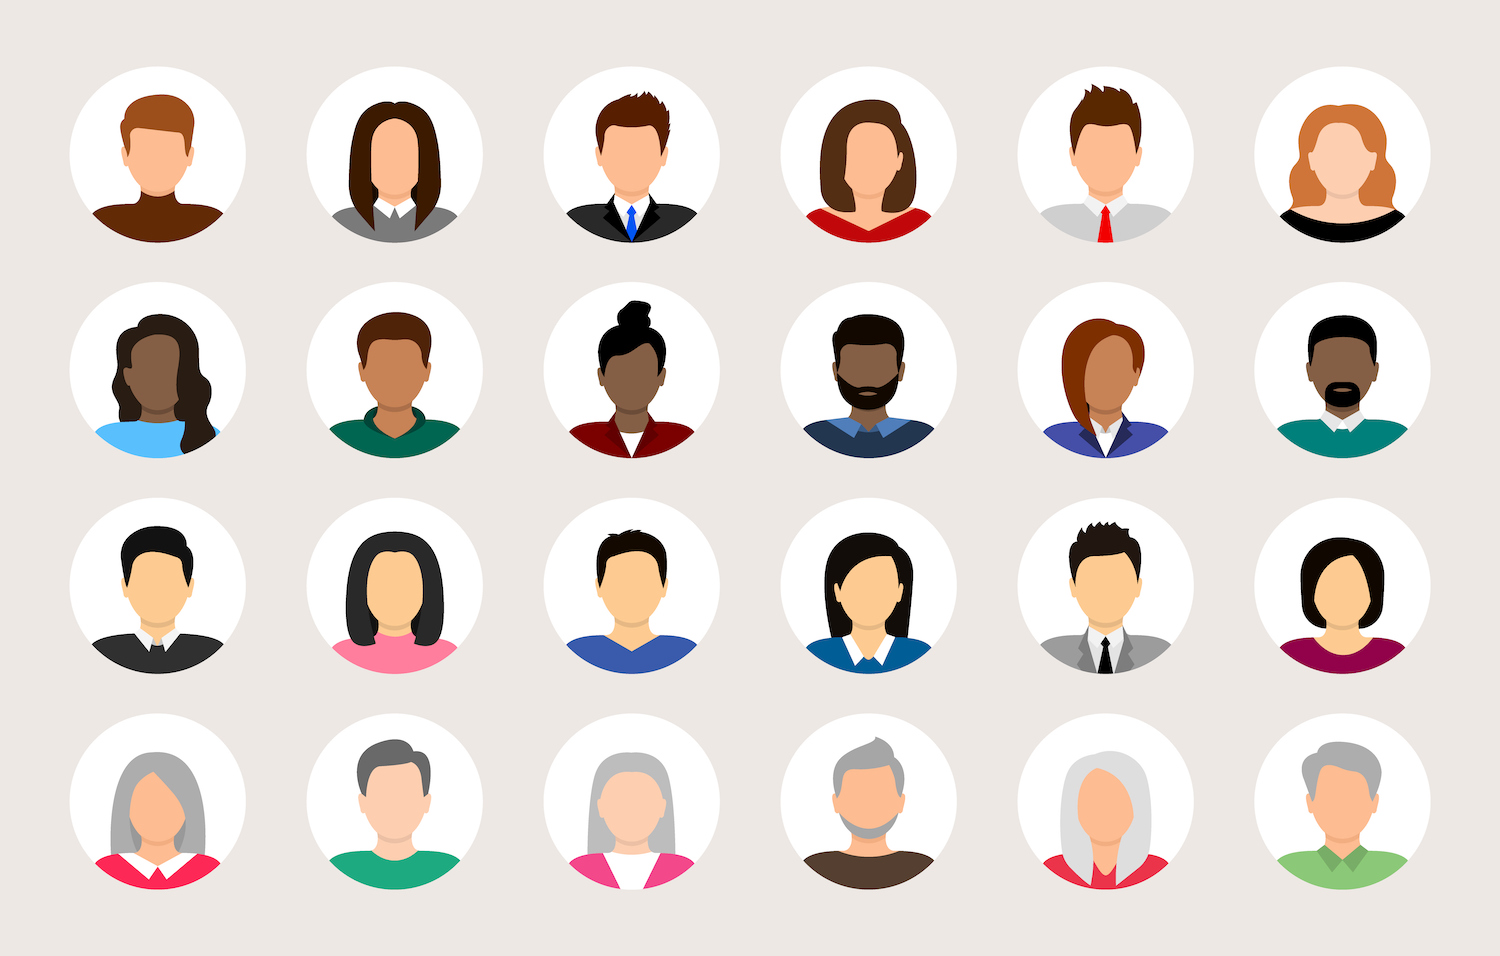 Conjunto de avatares de personas Diversos iconos de perfil de avatar de personas Avatar de usuario Hombres y mujeres se enfrentan a diferentes nacionalidades Retratos de hombres y mujeres colección de personajes ilustración vectorial